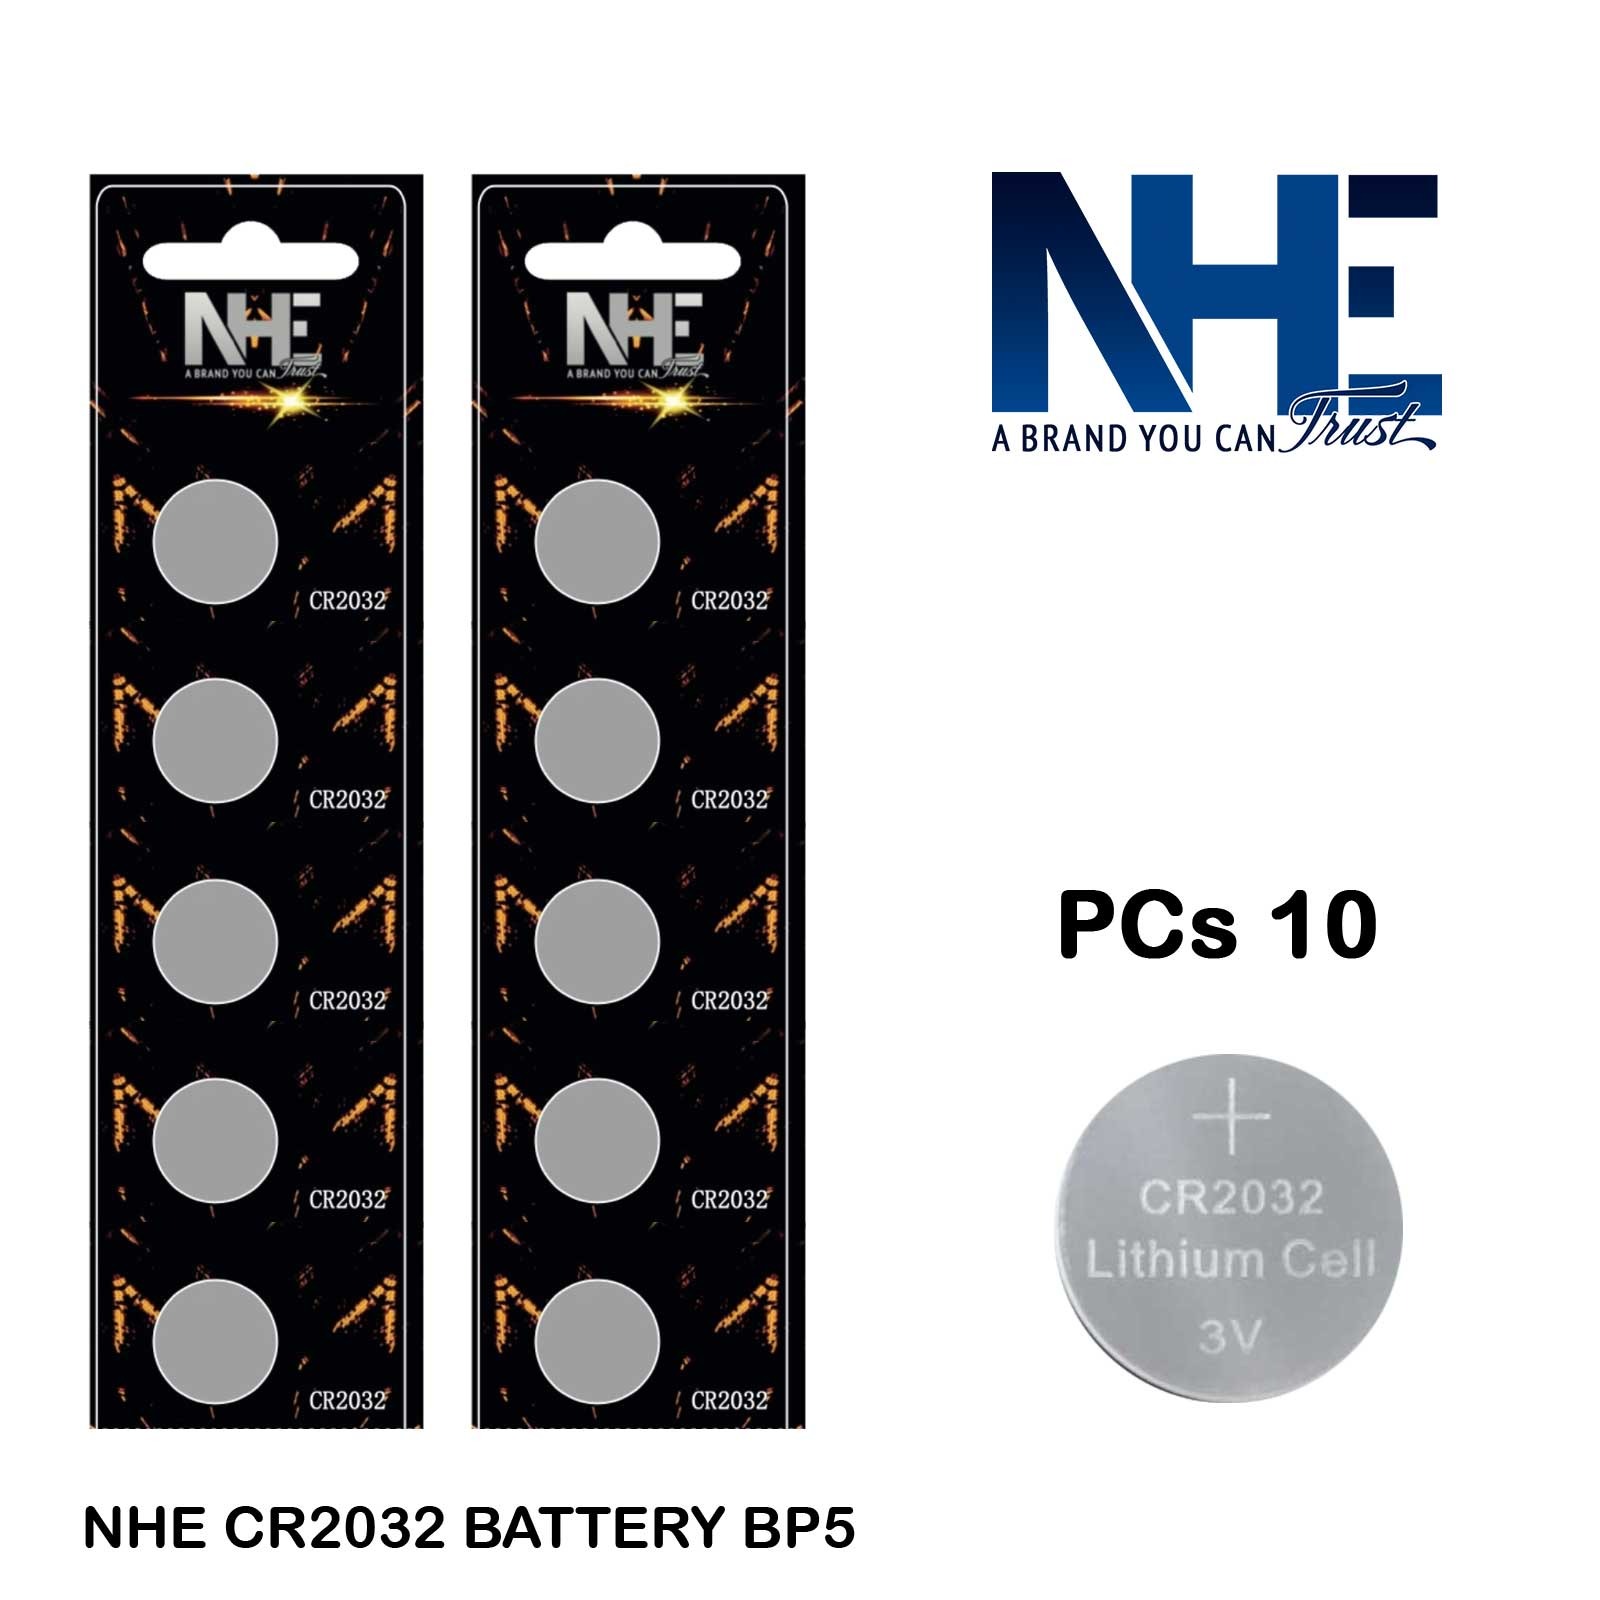 CR2032 Battery - CR2032 3V Lithium Battery, 24 pcs 